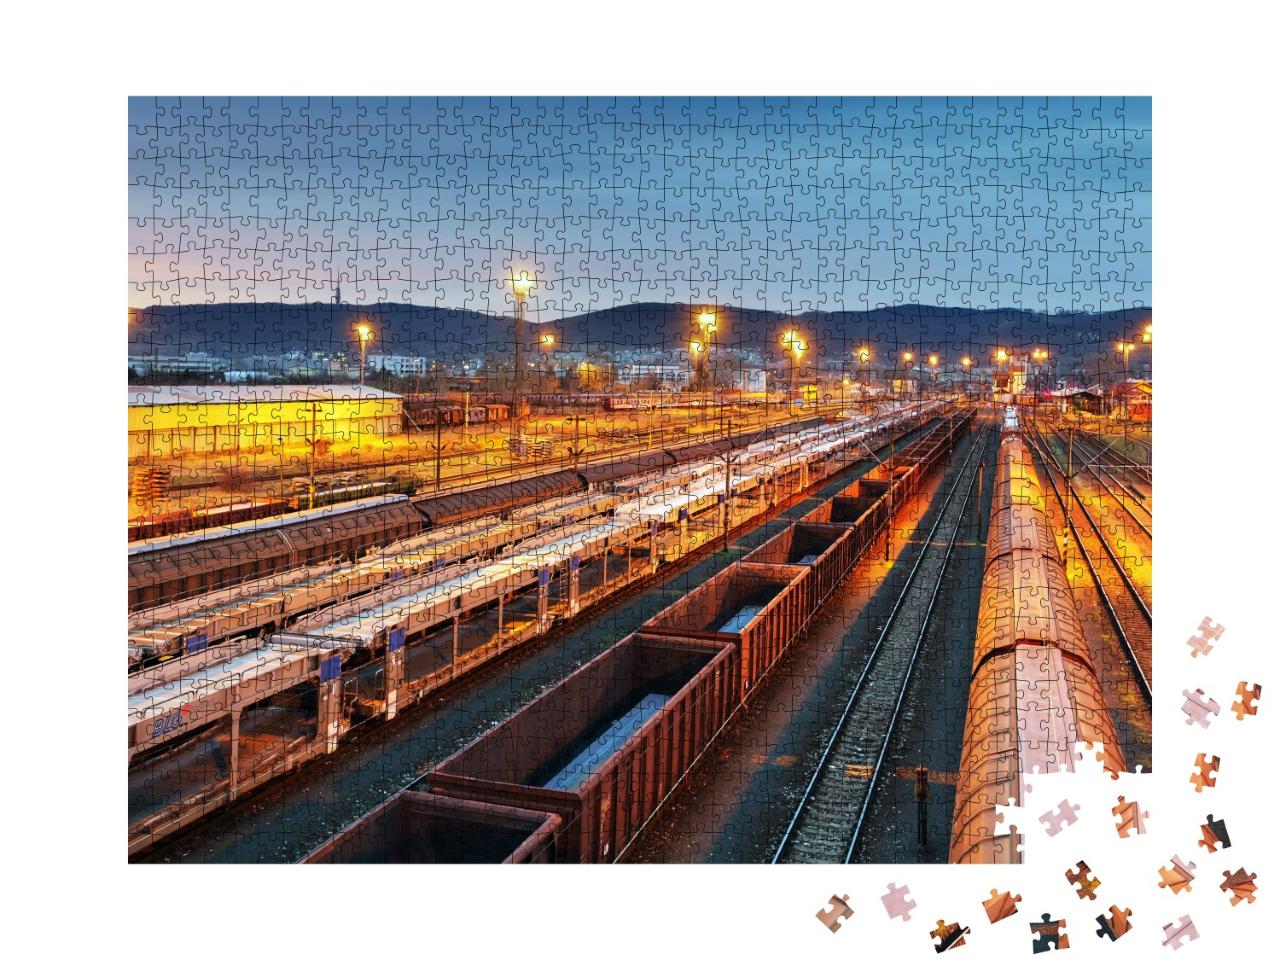 Puzzle 1000 Teile „Schienengüterverkehr, Güterzug“